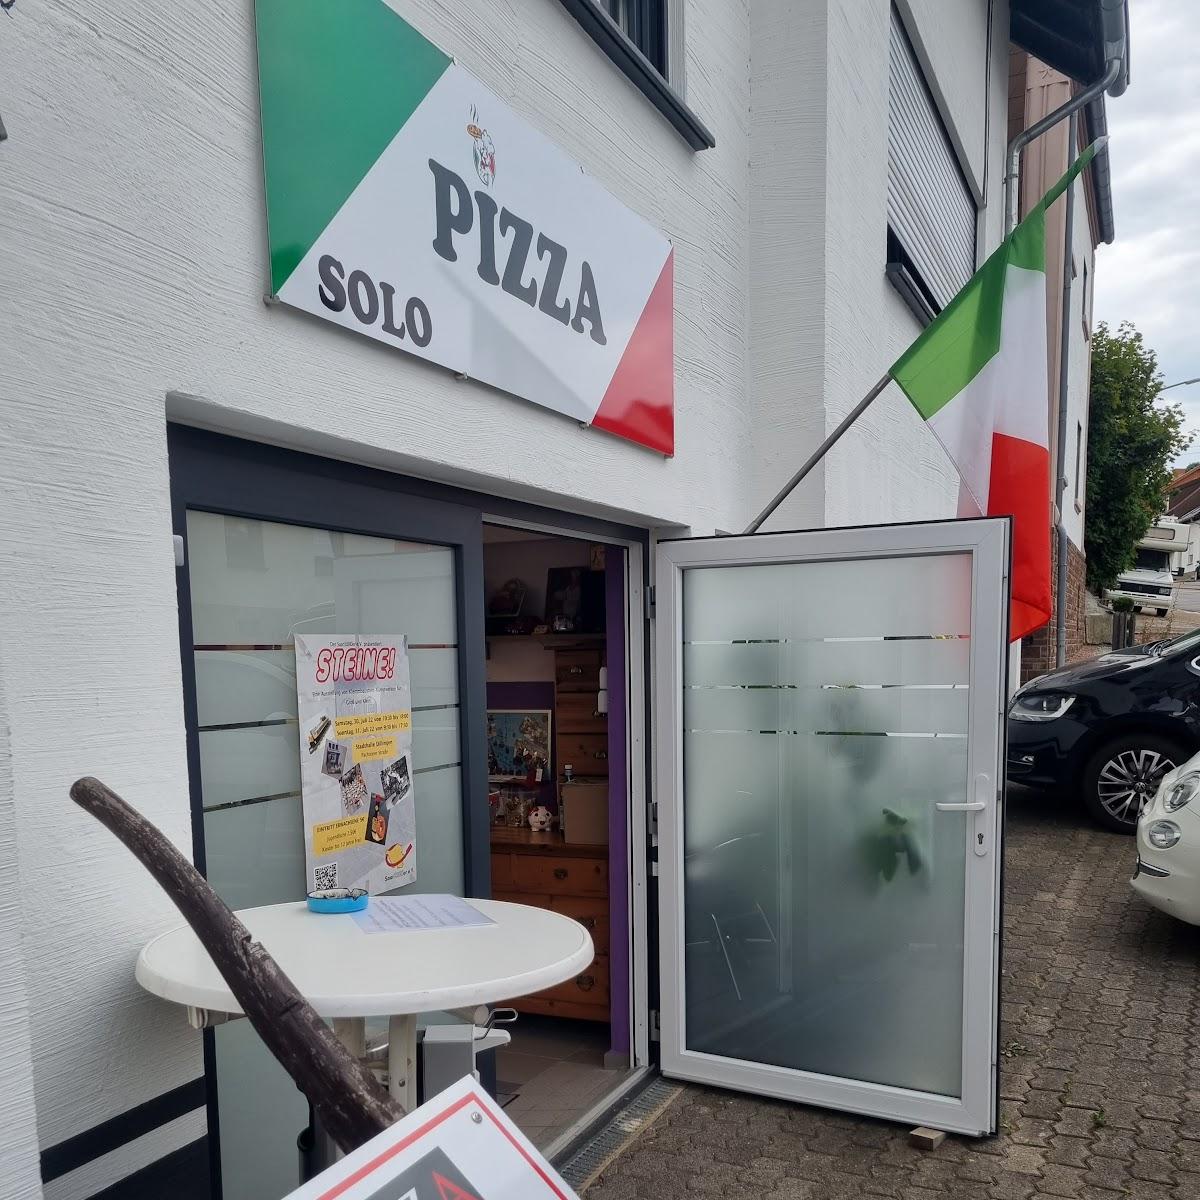 Restaurant "SOLO PIZZA" in Großrosseln